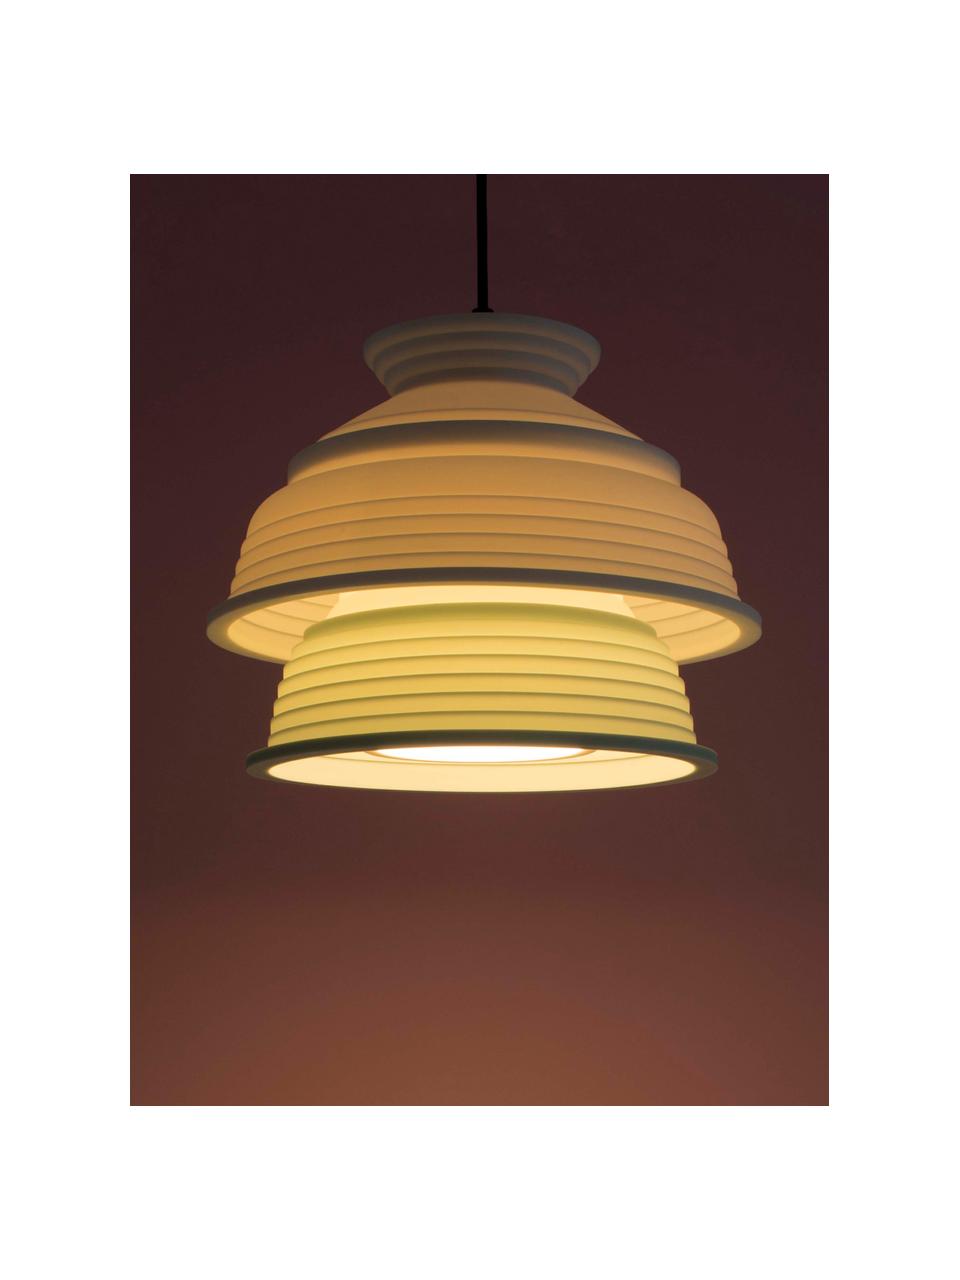 Kleine Pendelleuchte CL4, Lampenschirm: Silikon, Kunststoff, Hellgrün, Weiß, Ø 26 x H 20 cm